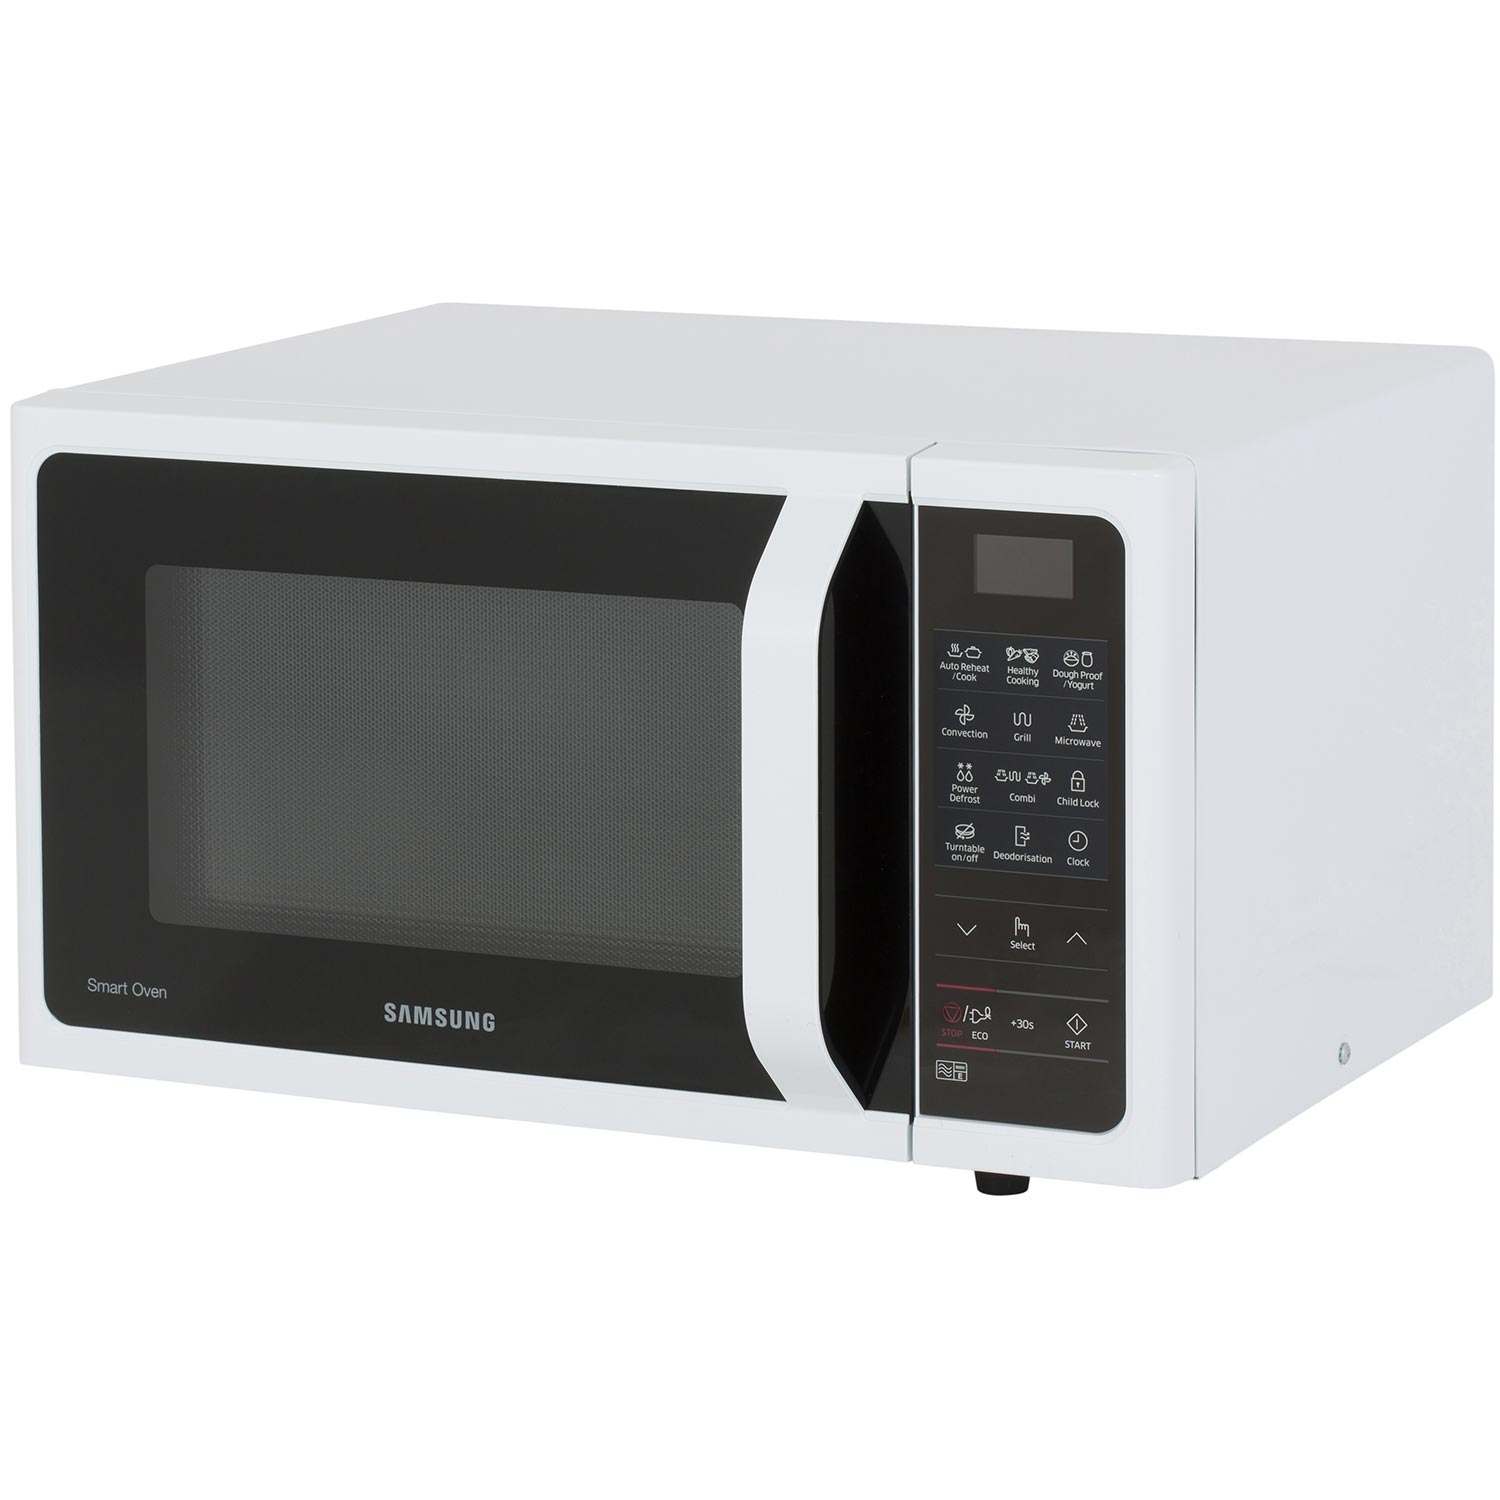 Samsung 28 Litre Combination Microwave - White - CK Home Appliances Ltd